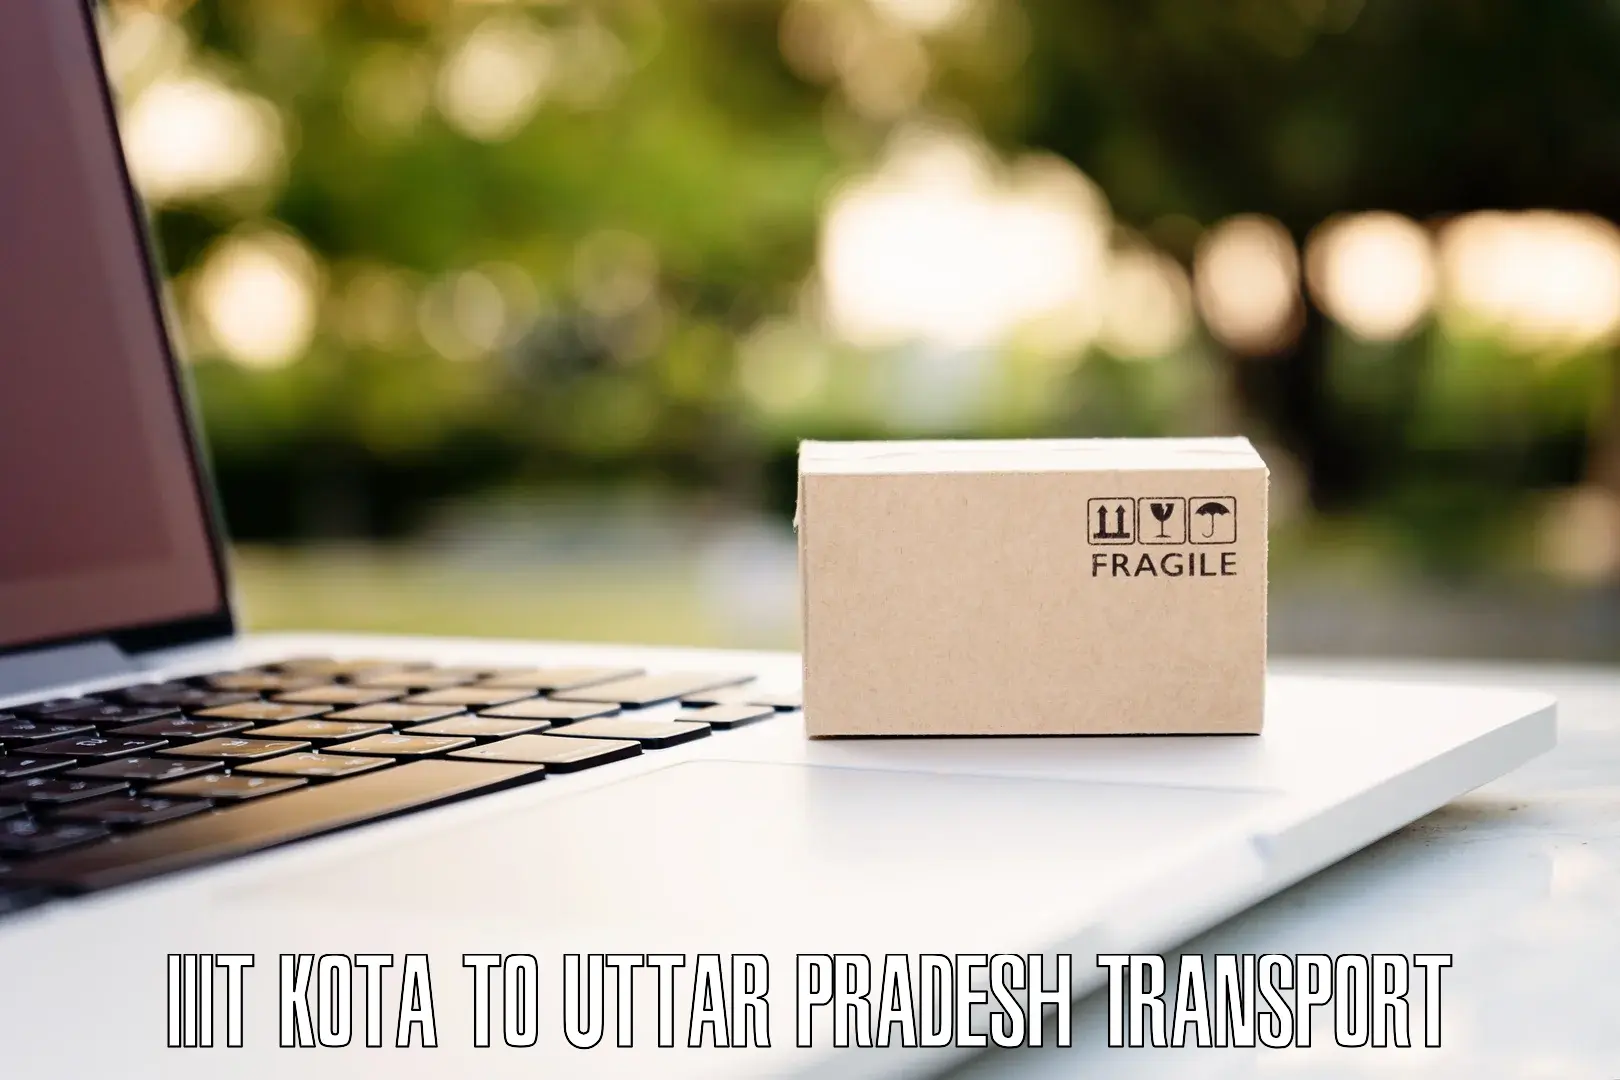 Nearest transport service IIIT Kota to Tulsipur